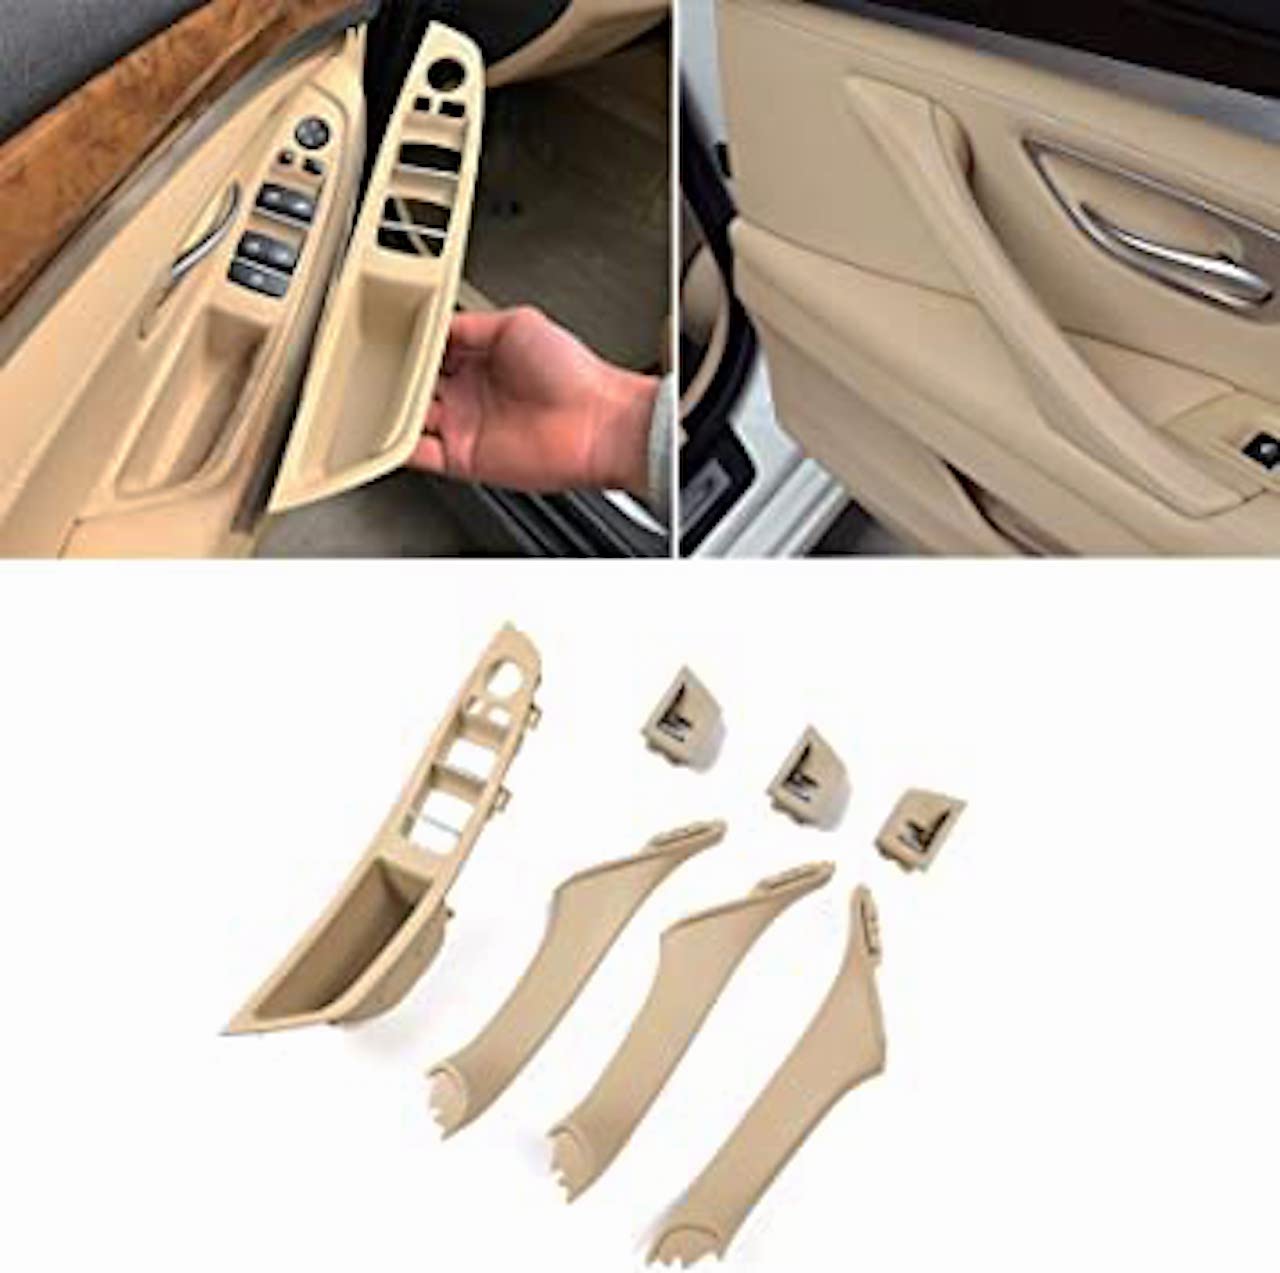 BMW melting car door handle repair kit